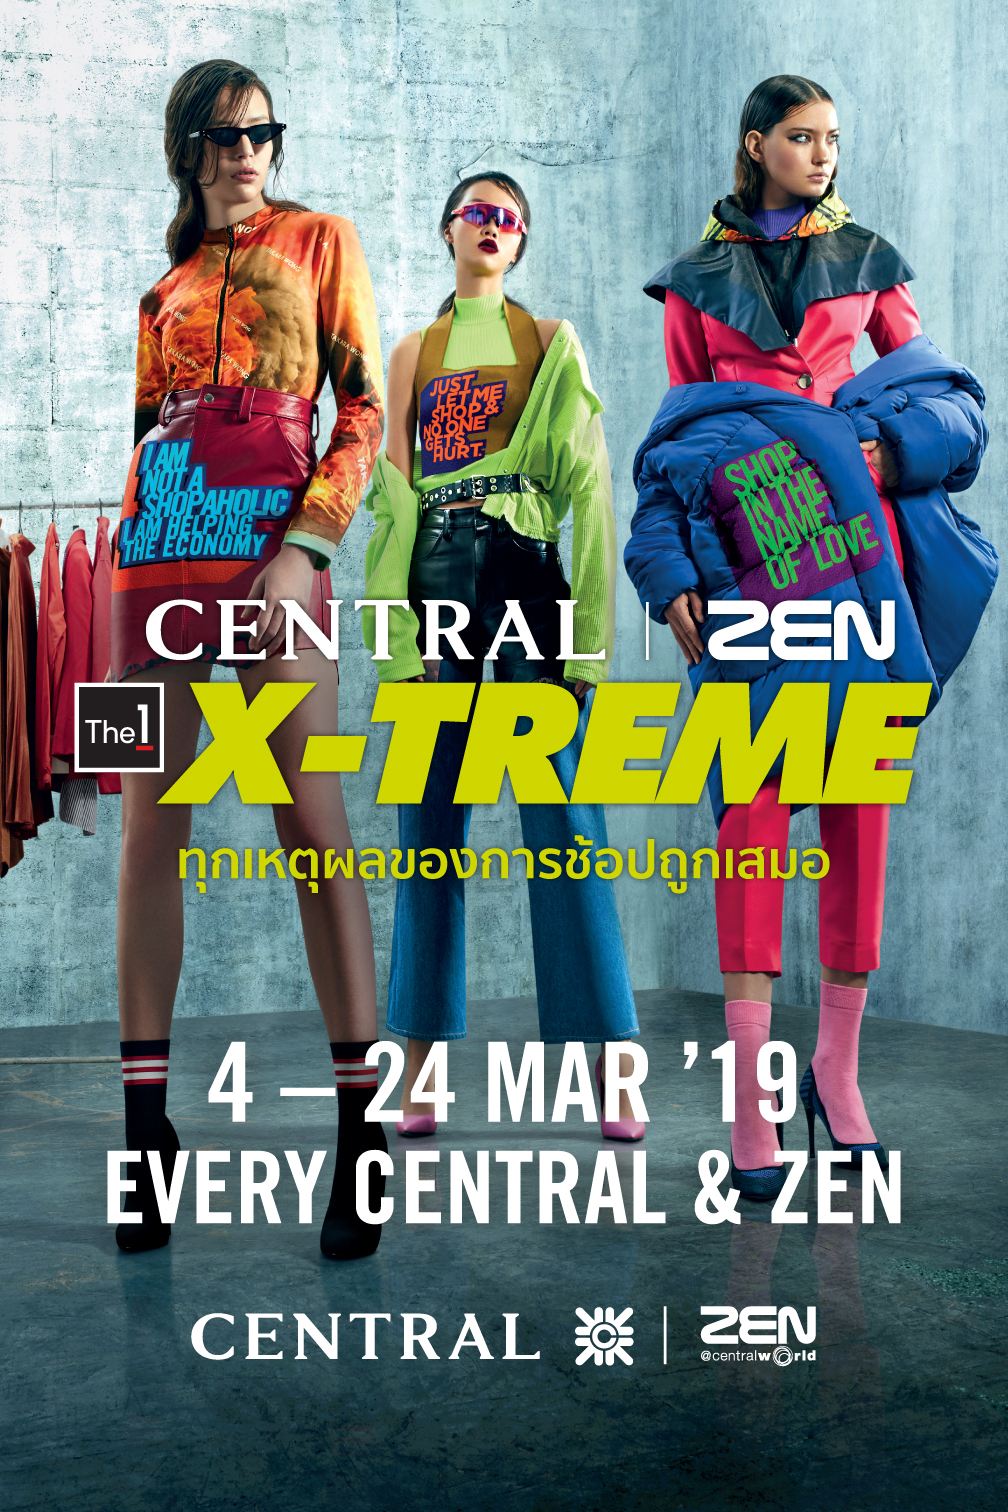 Central | ZEN The 1 X-Treme